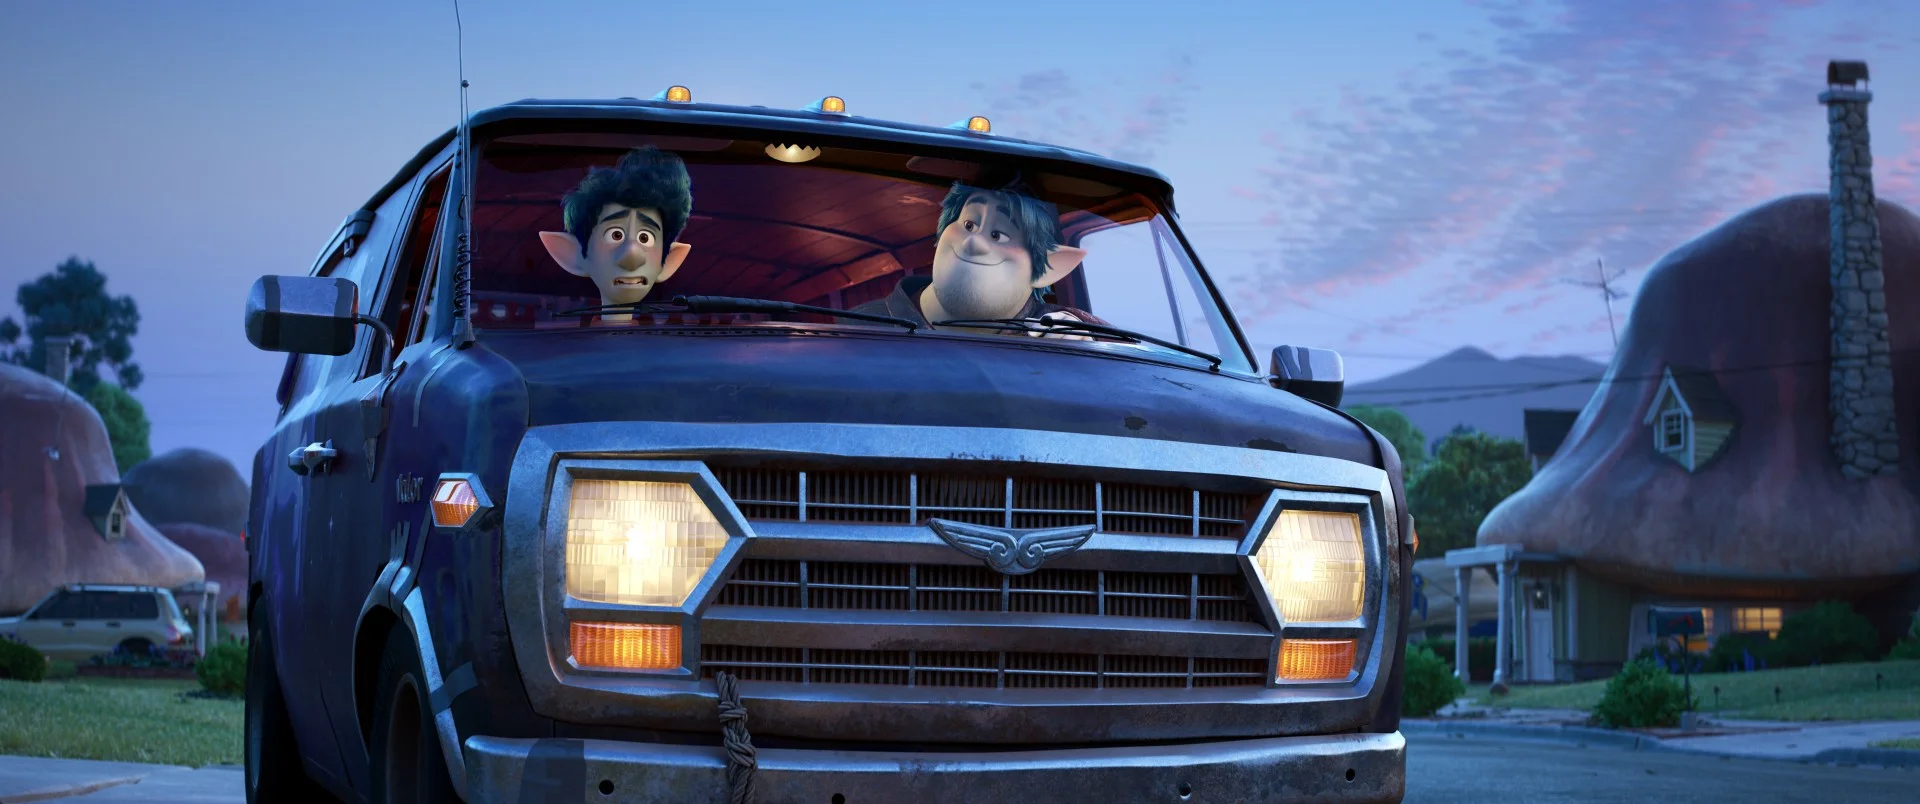 Pixar показала первый трейлер мультфильма Onward - фото 2